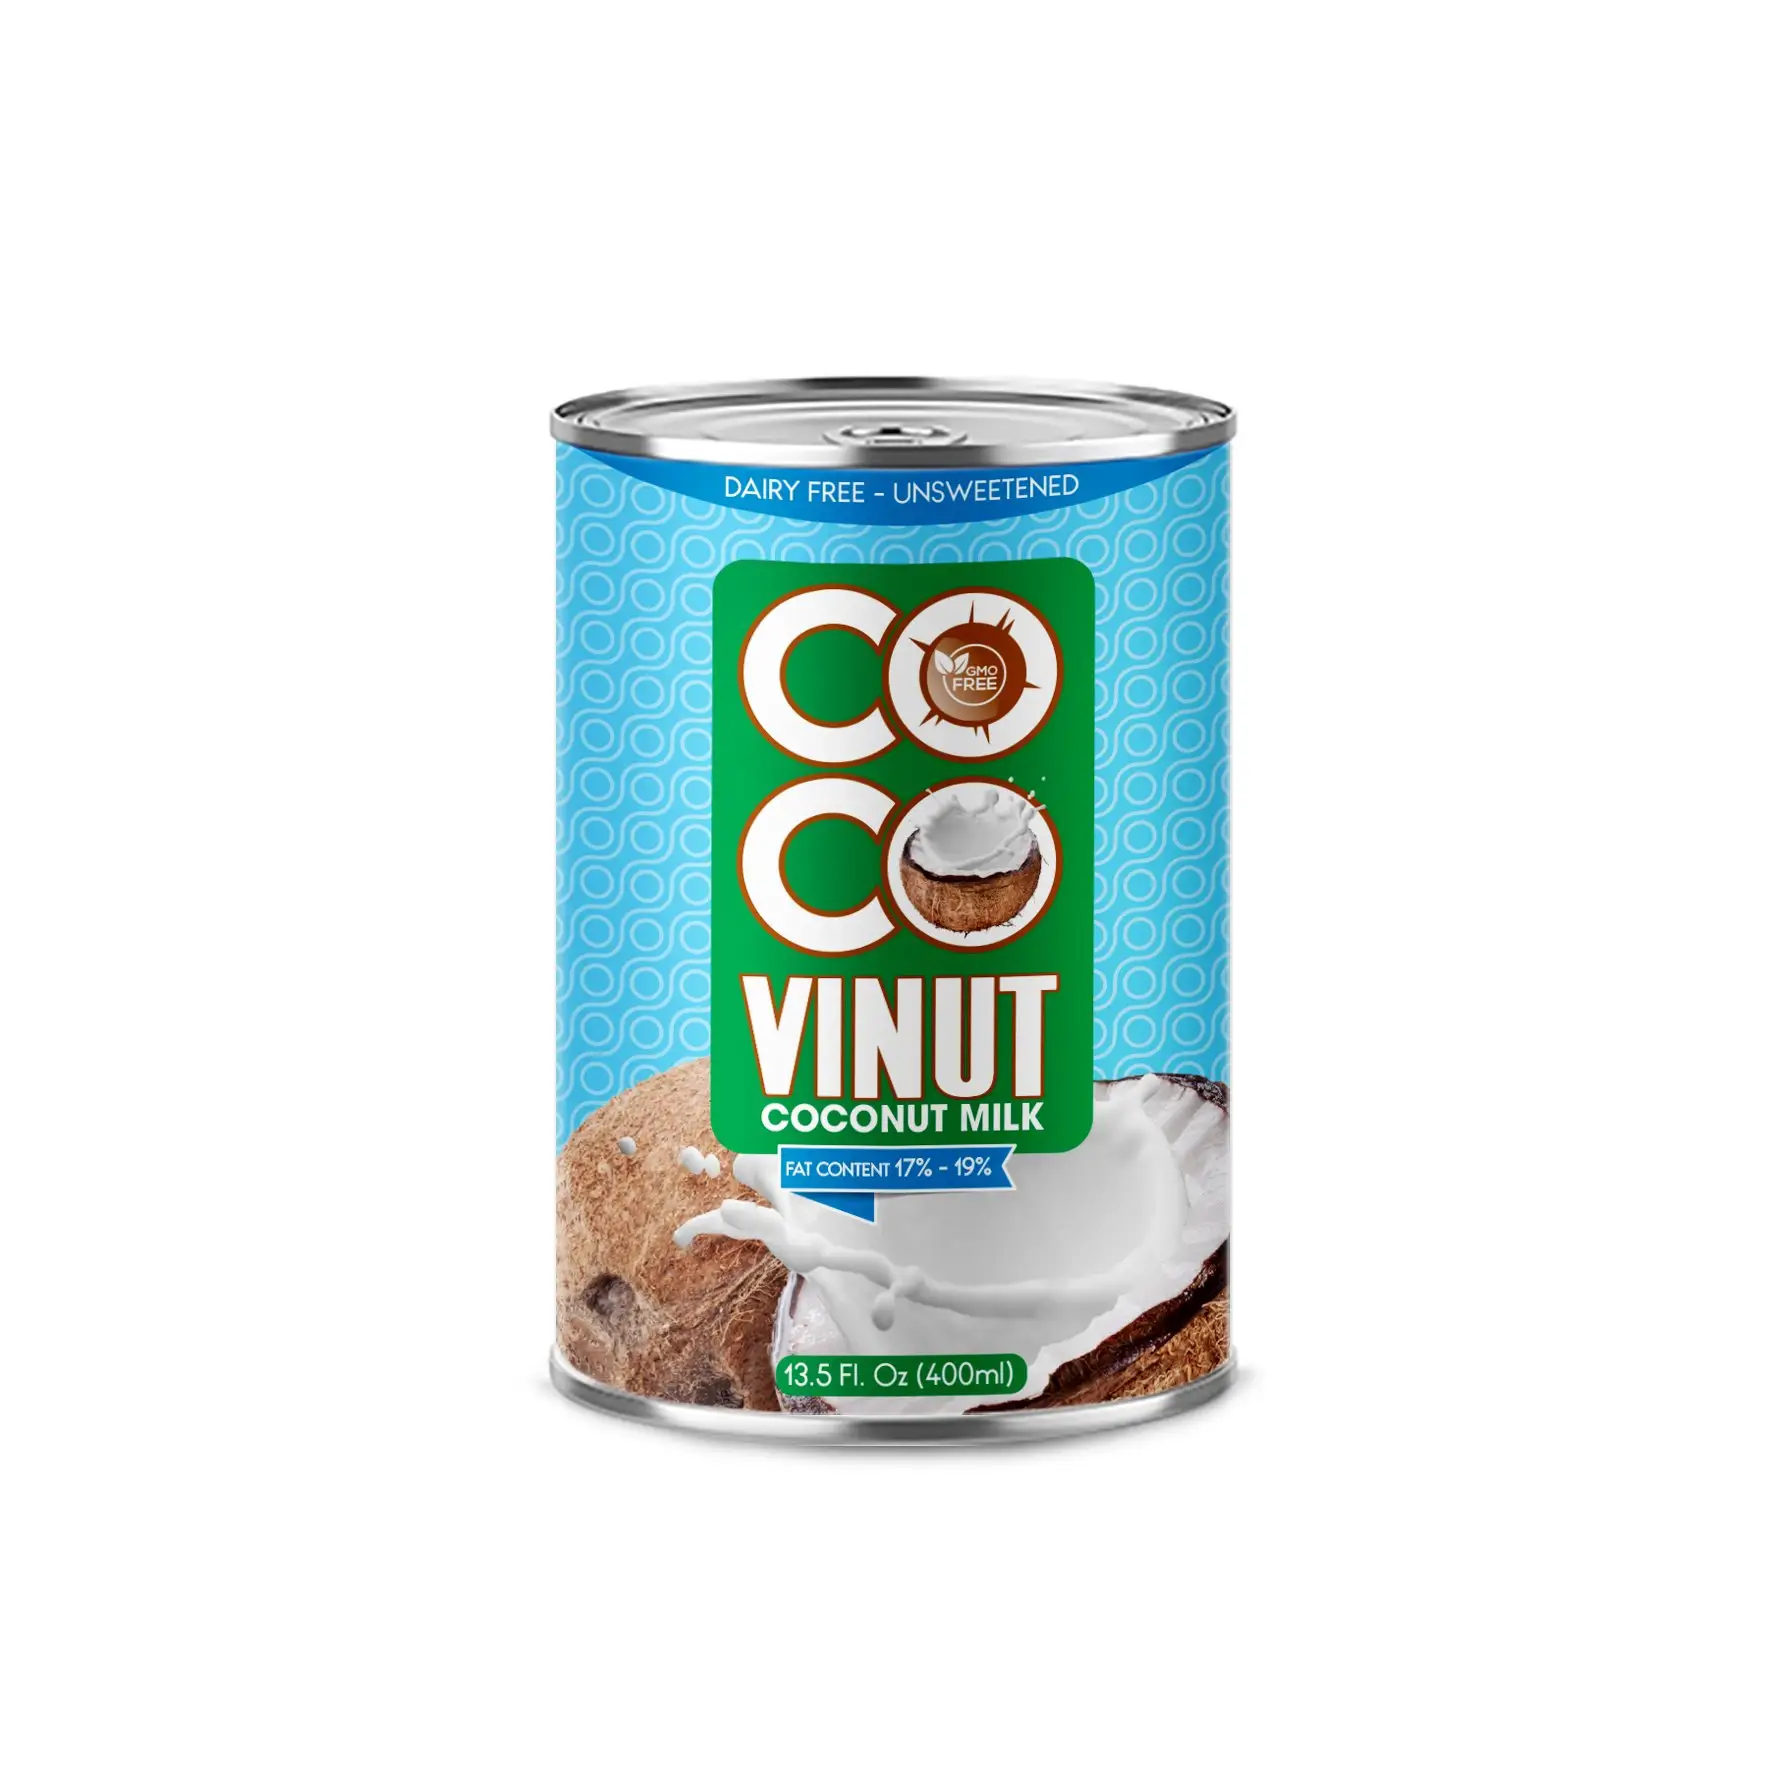 400ml Can (konserve) hindistan cevizi sütü yemek pişirmek için 17-19% yağ UHT Gluten ücretsiz ve Vegan ürün helal